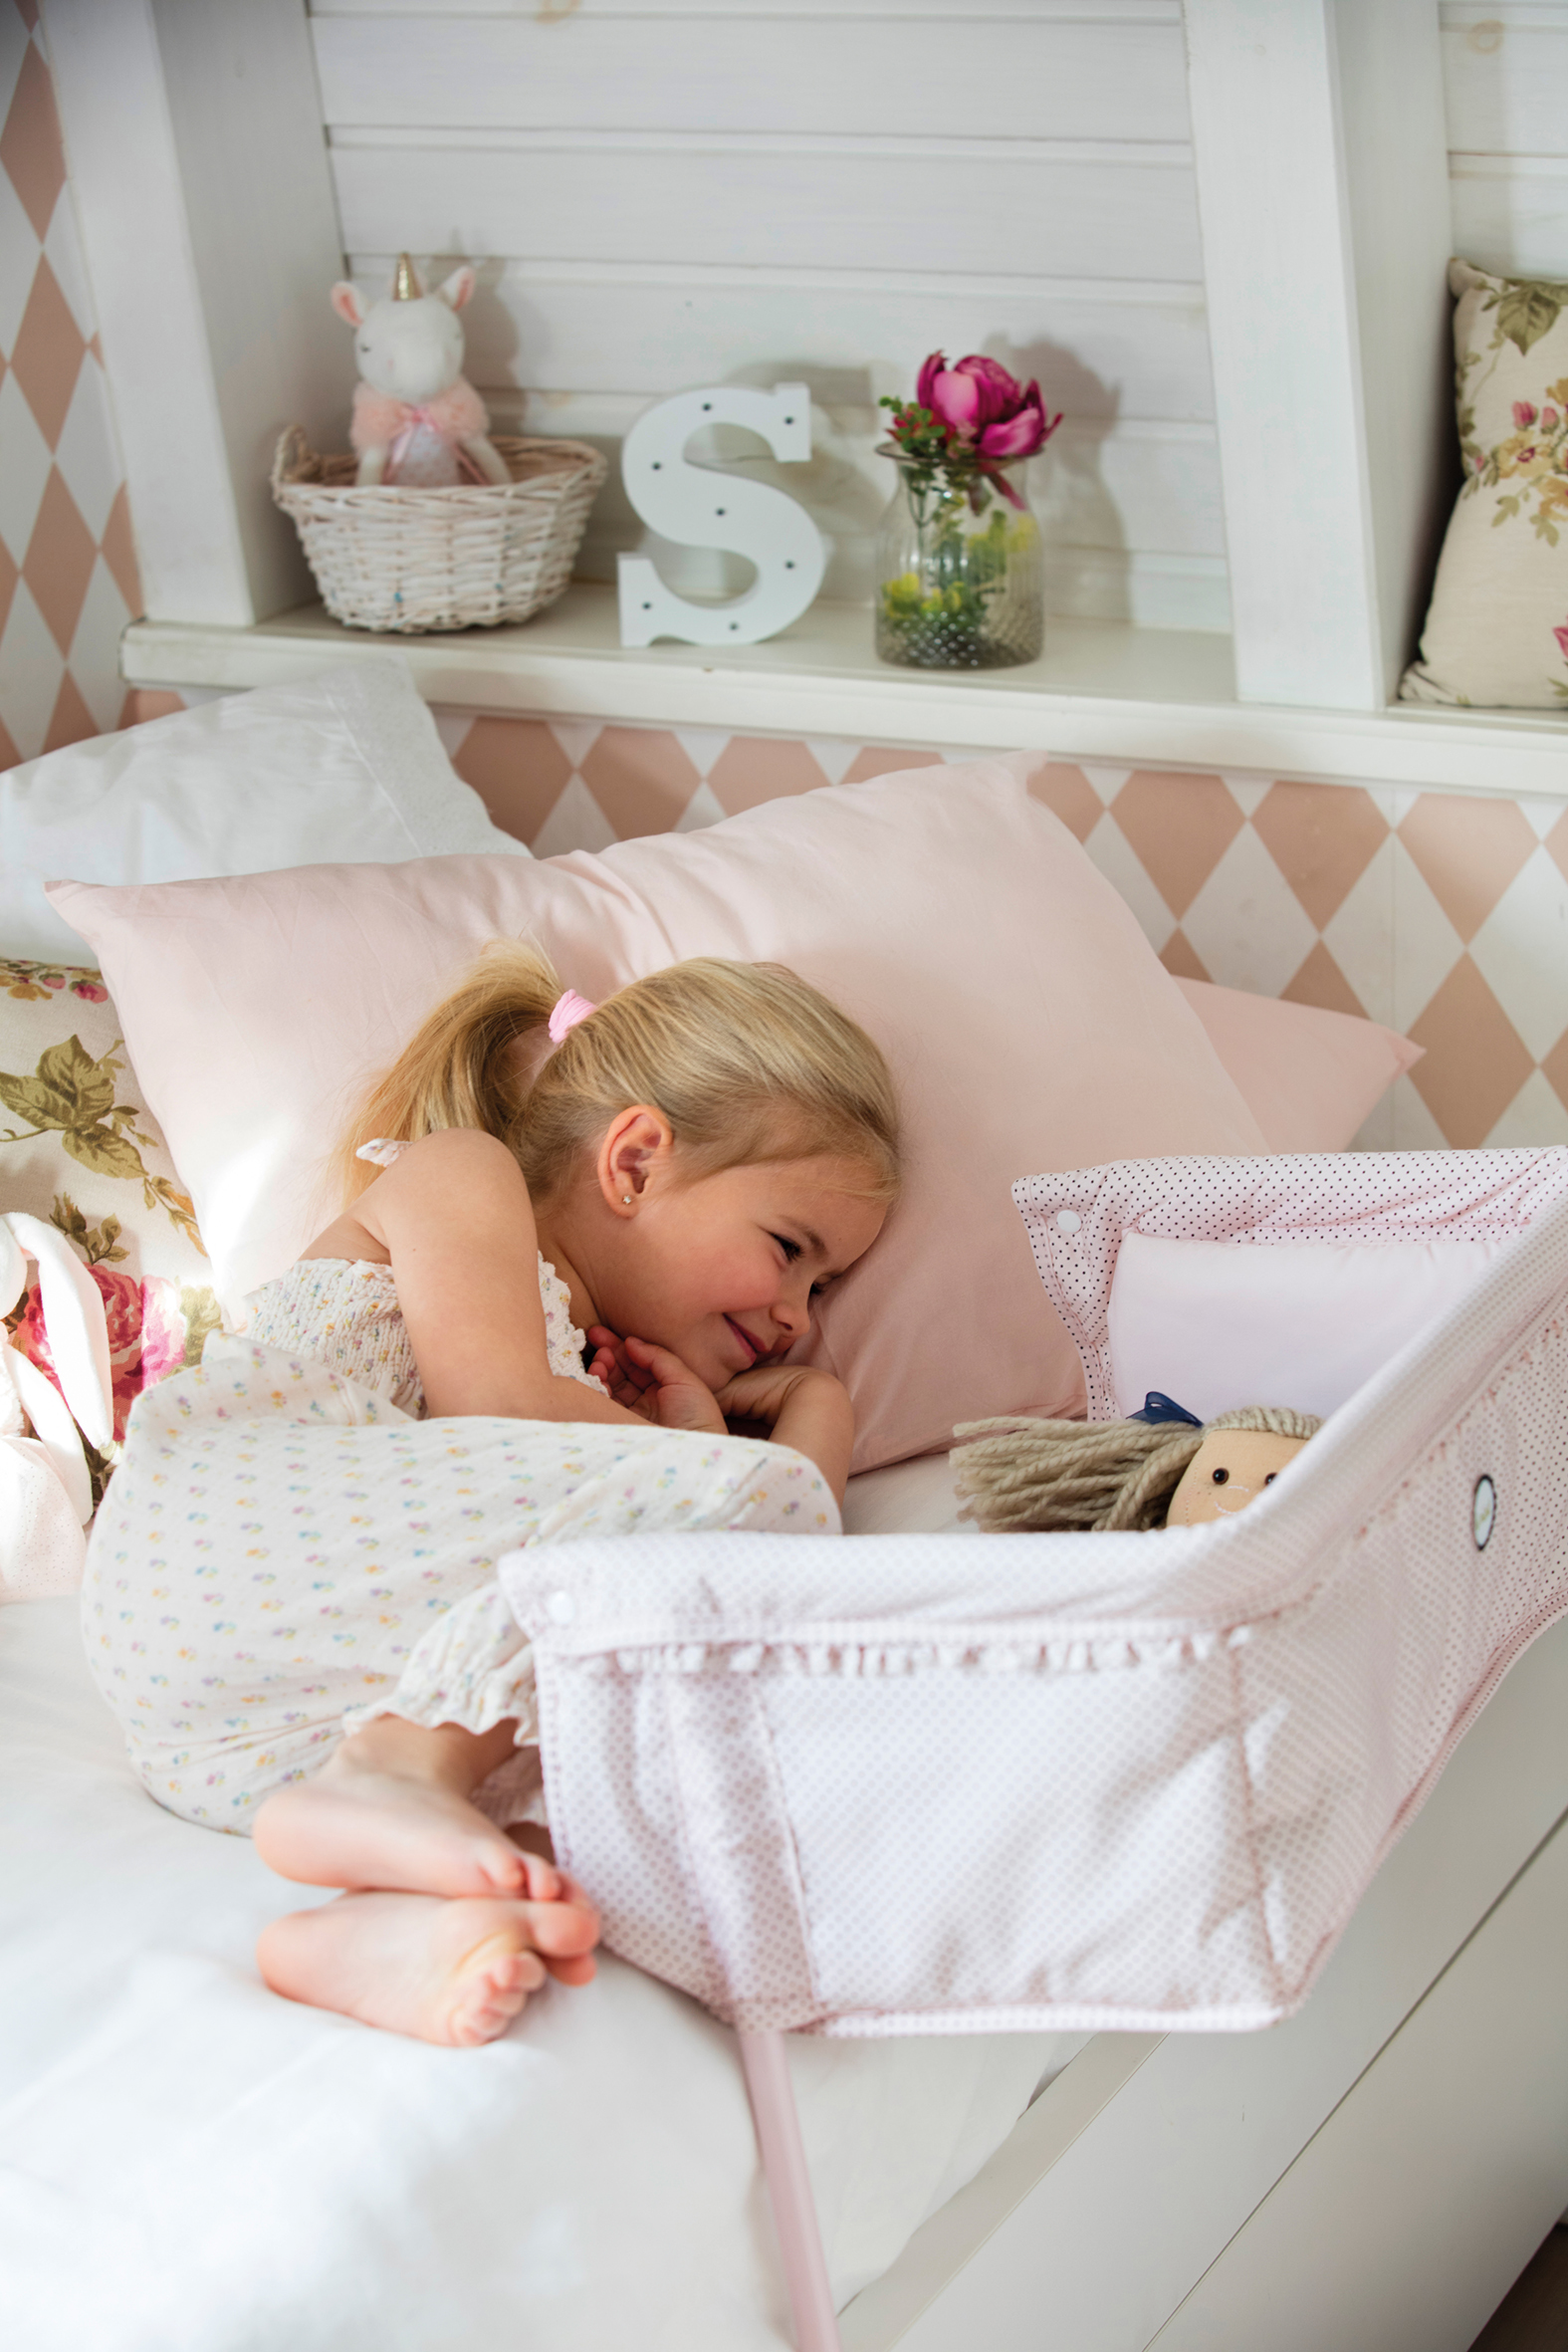 Приставная кровать для ребенка от 1 года